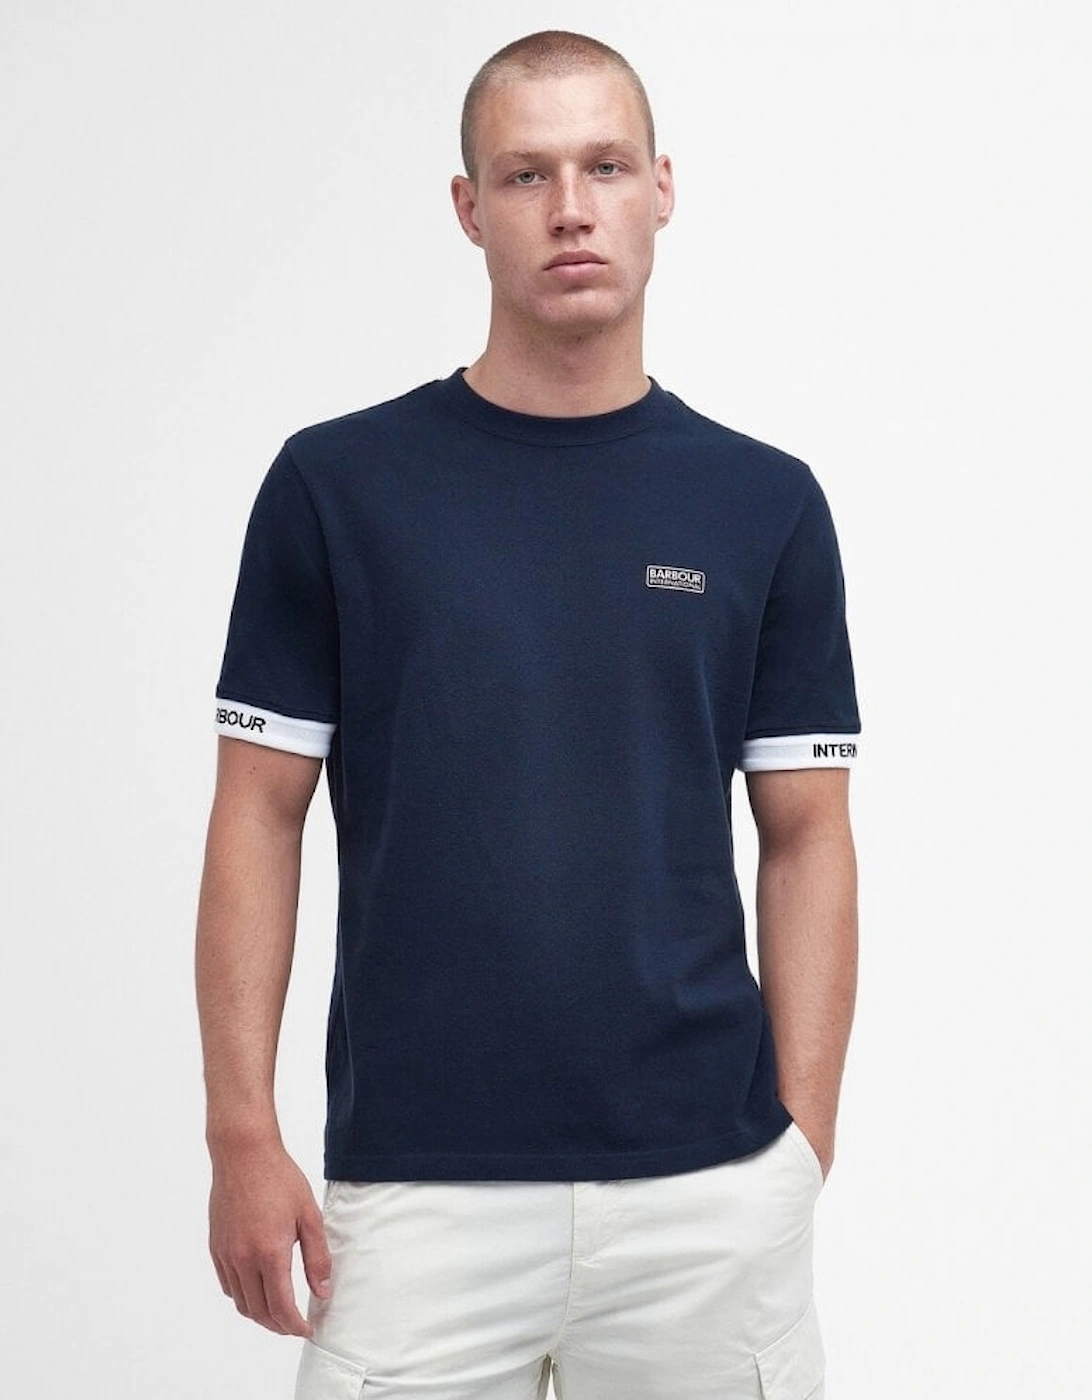 Heim T-Shirt - Navy Blue